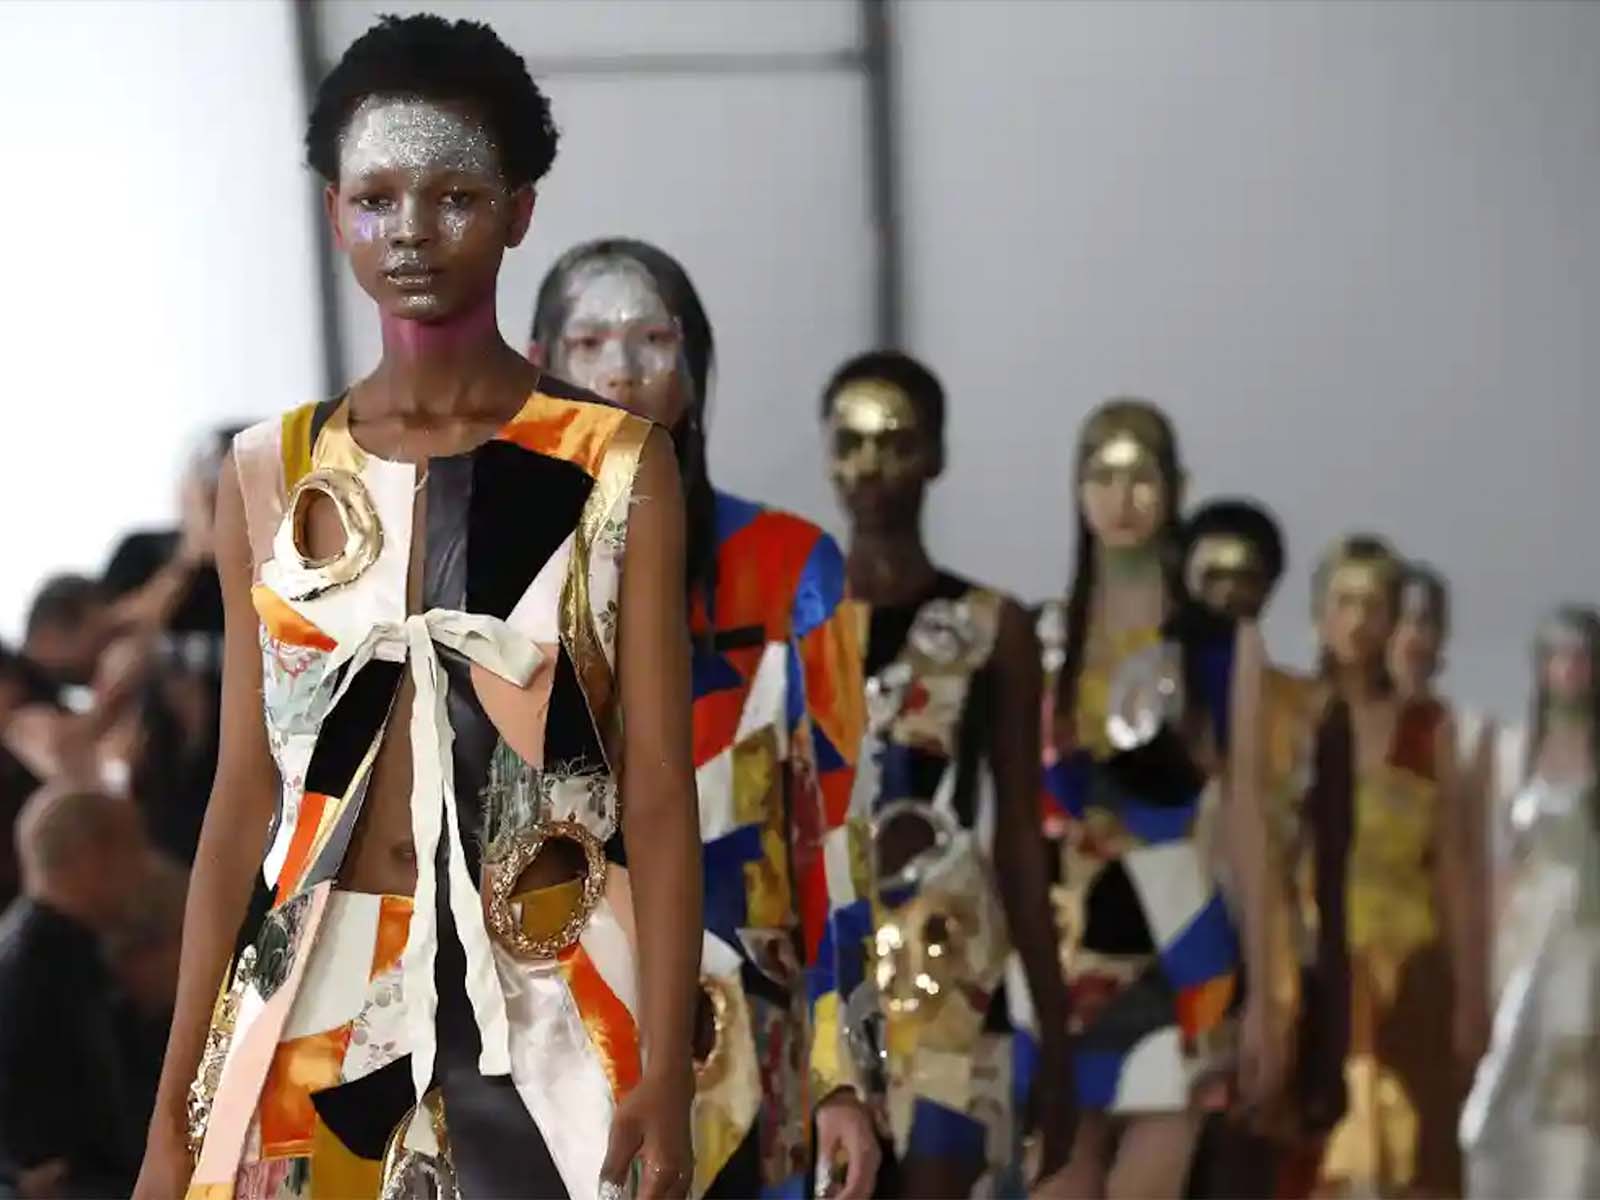 Marni swaps Milan Fashion Week for New York